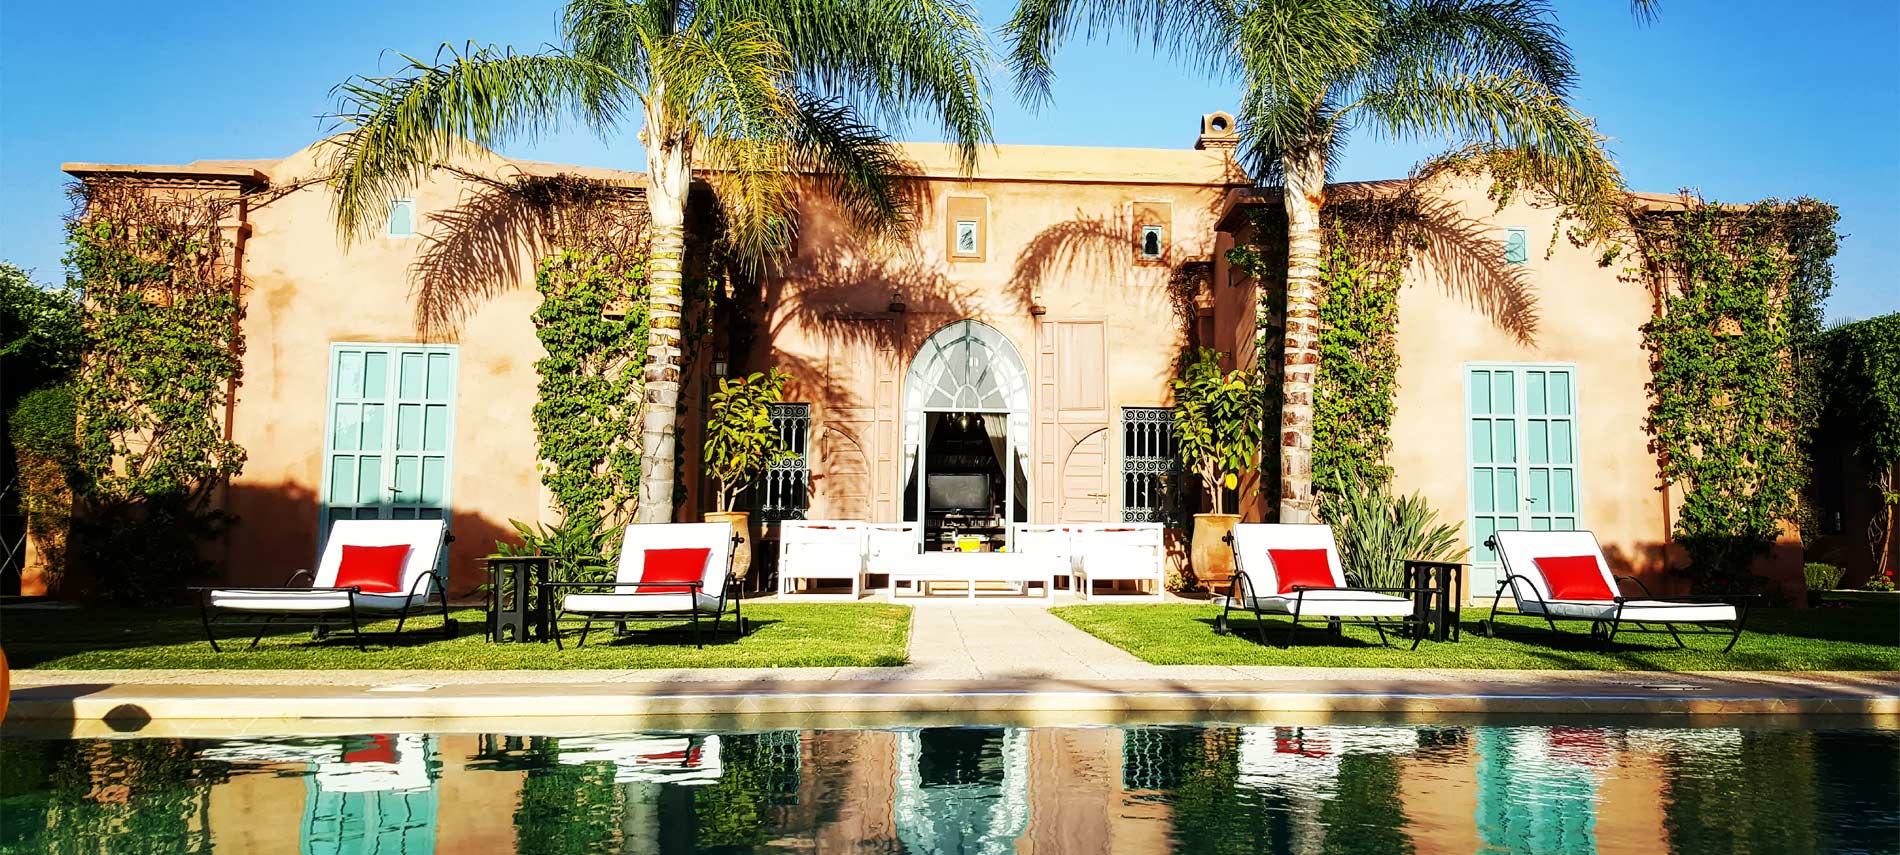 Location de villa vacances avec piscine à Marrakech